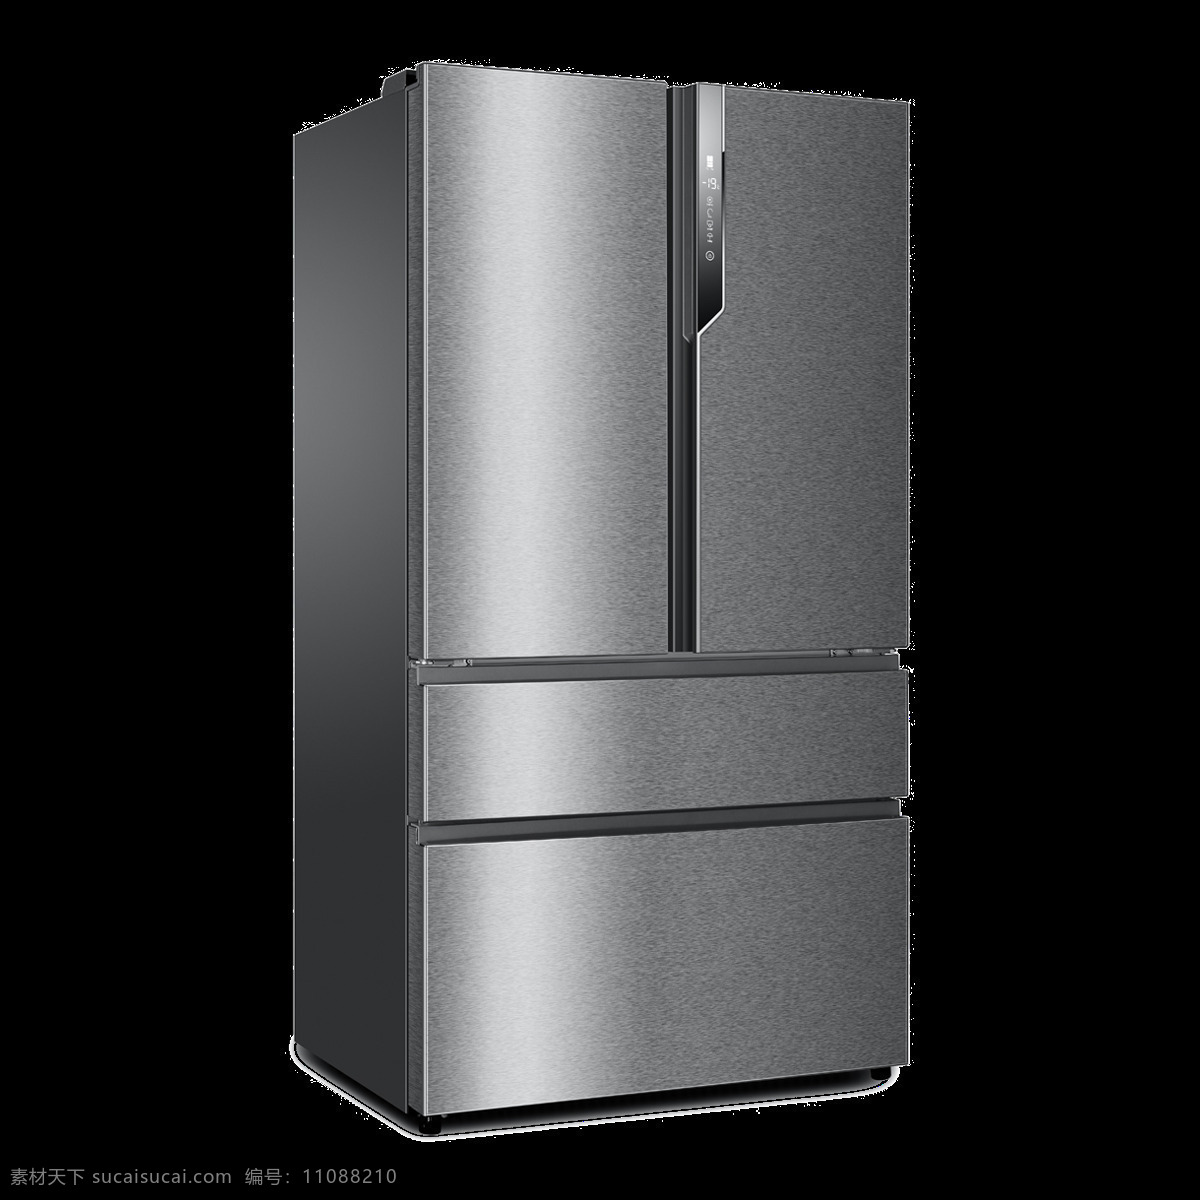 银灰色 冰箱 免 抠 透明 图 层 冰箱卡通图片 电冰箱高清 冰箱海报 冰箱食物 开冰箱 冰箱素材 双开门冰箱 单开门冰箱 三门冰箱 单门冰箱 双门冰箱 小冰箱 节能冰箱